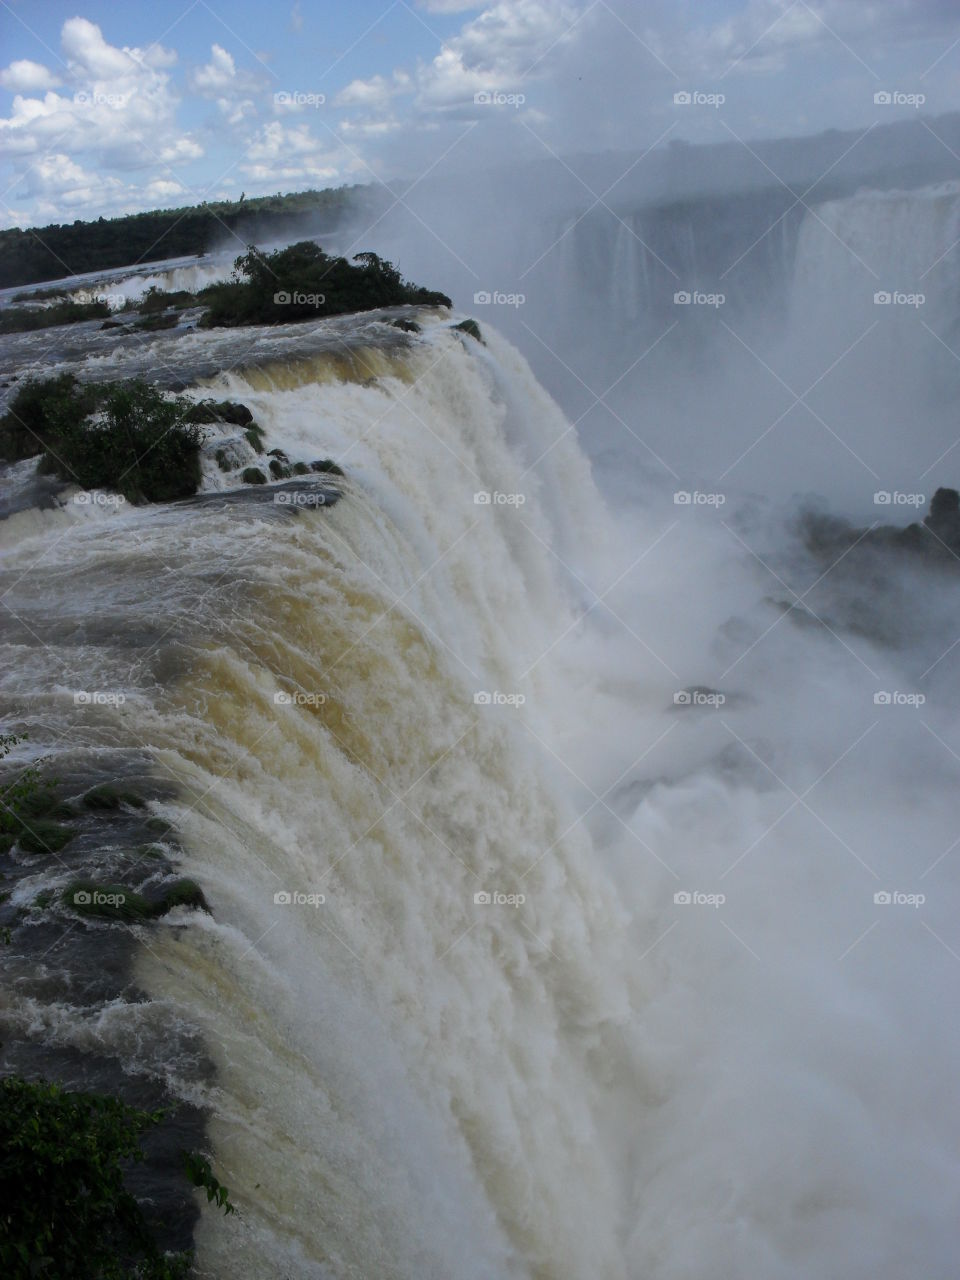 cataratas do Iguaçu Brasil